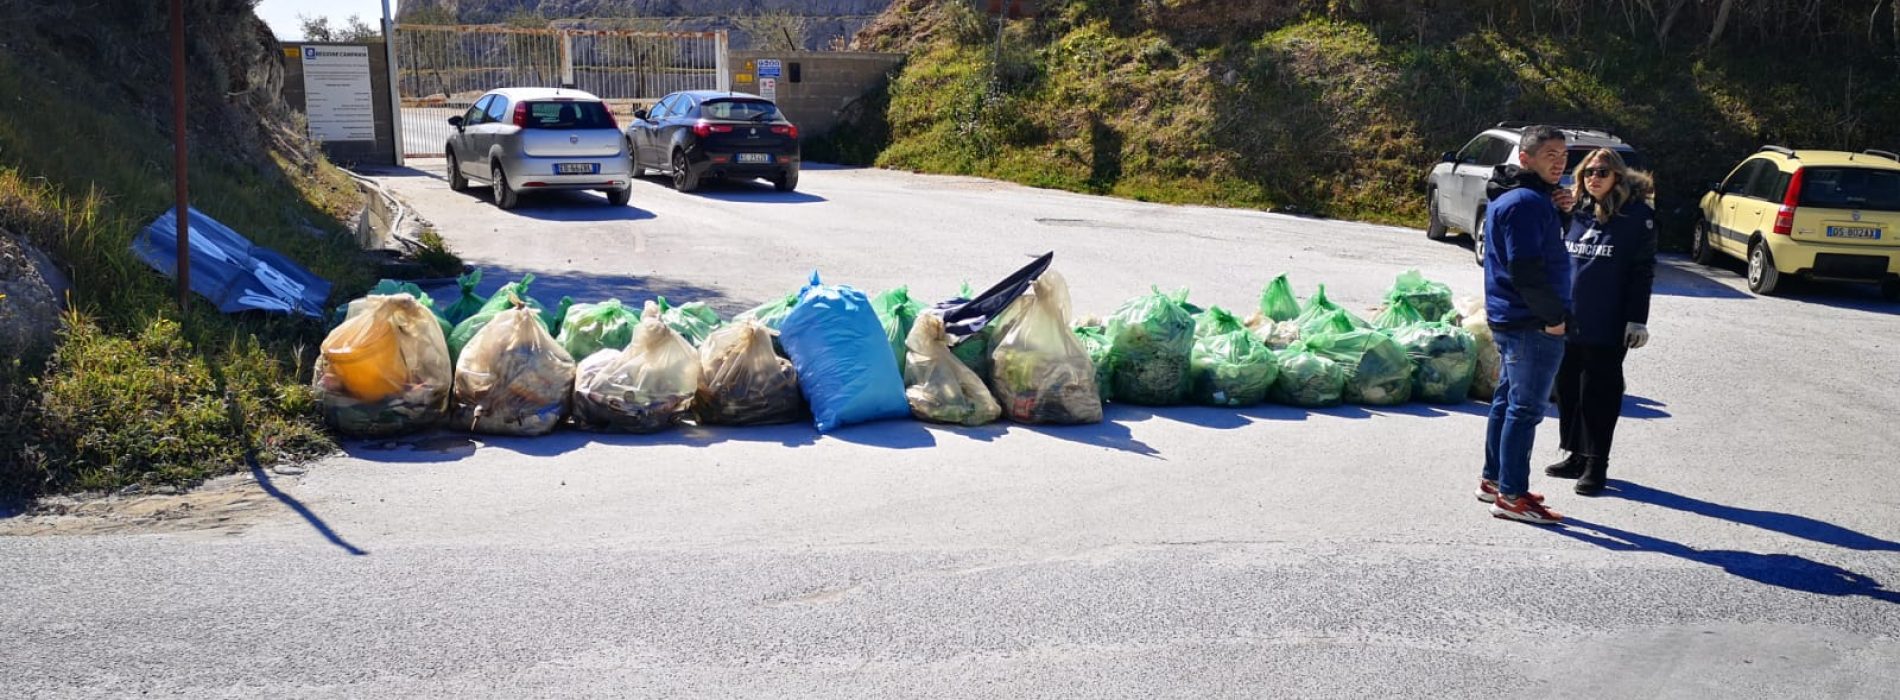 Caserta è Plastic Free, ben duecento i sacchi di rifiuti raccolti